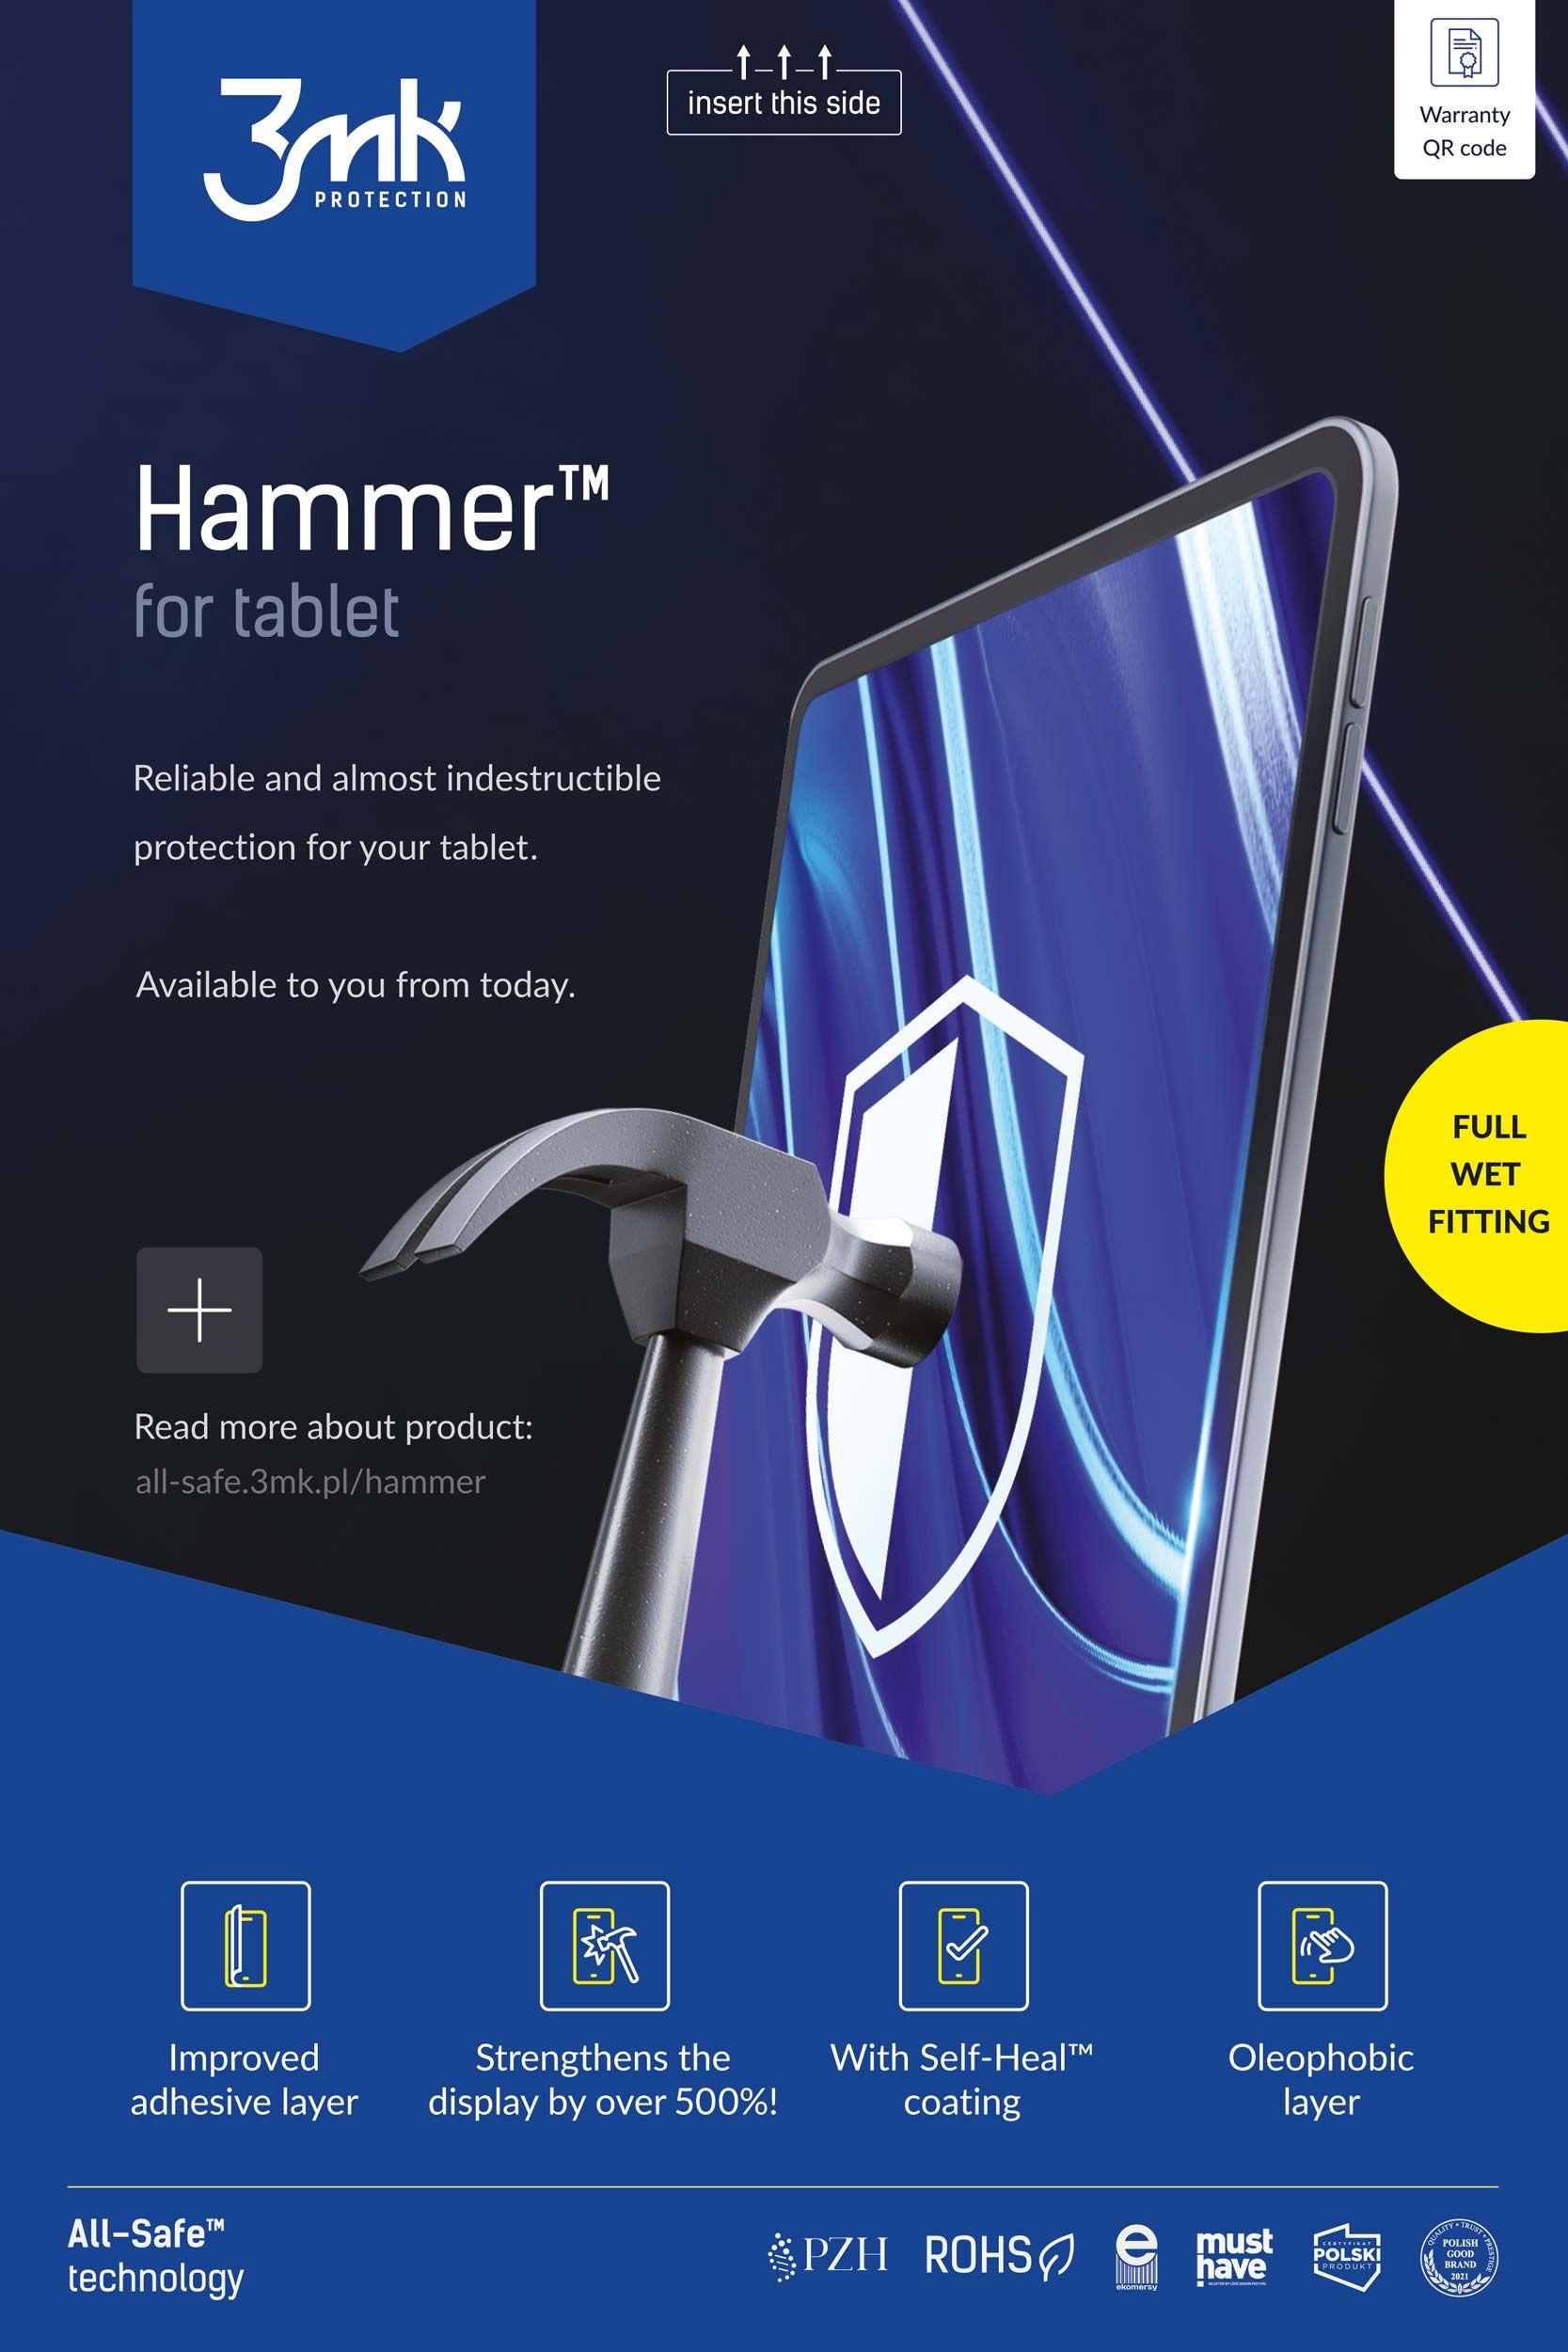 3MK Ochranná fólie All-Safe - AIO Hammer Tablet Full Wet Fittting 5ks